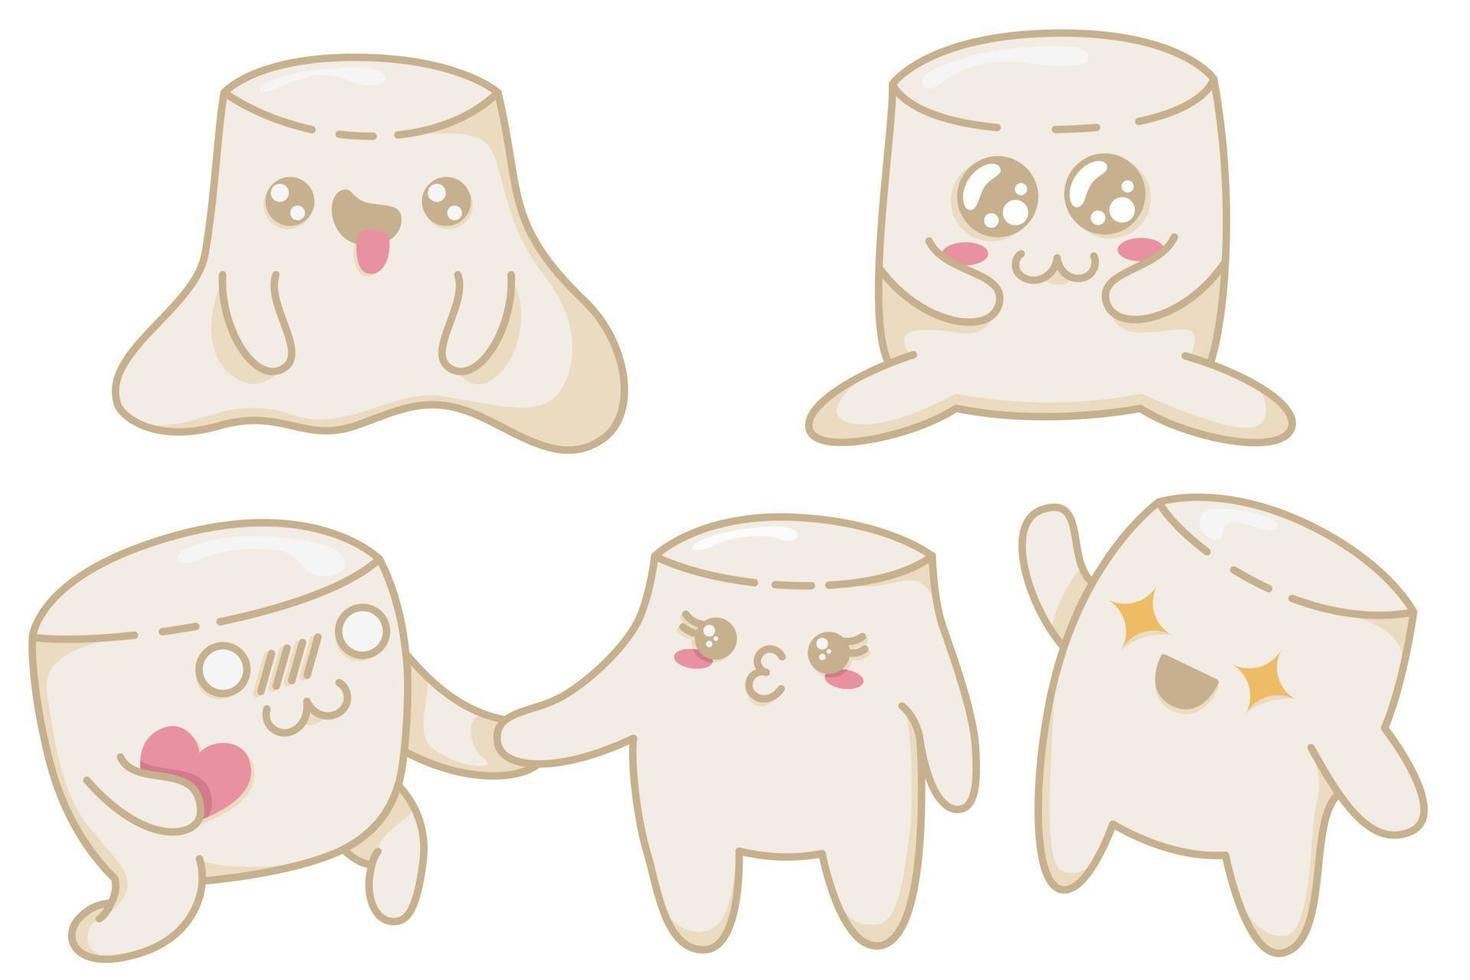 un ensemble de guimauves kawaii mignonnes avec différentes émotions dans un style anime. personnages de guimauve kawaii dans un style plat, cartes postales dessinées à la main pour exprimer leurs sentiments vecteur